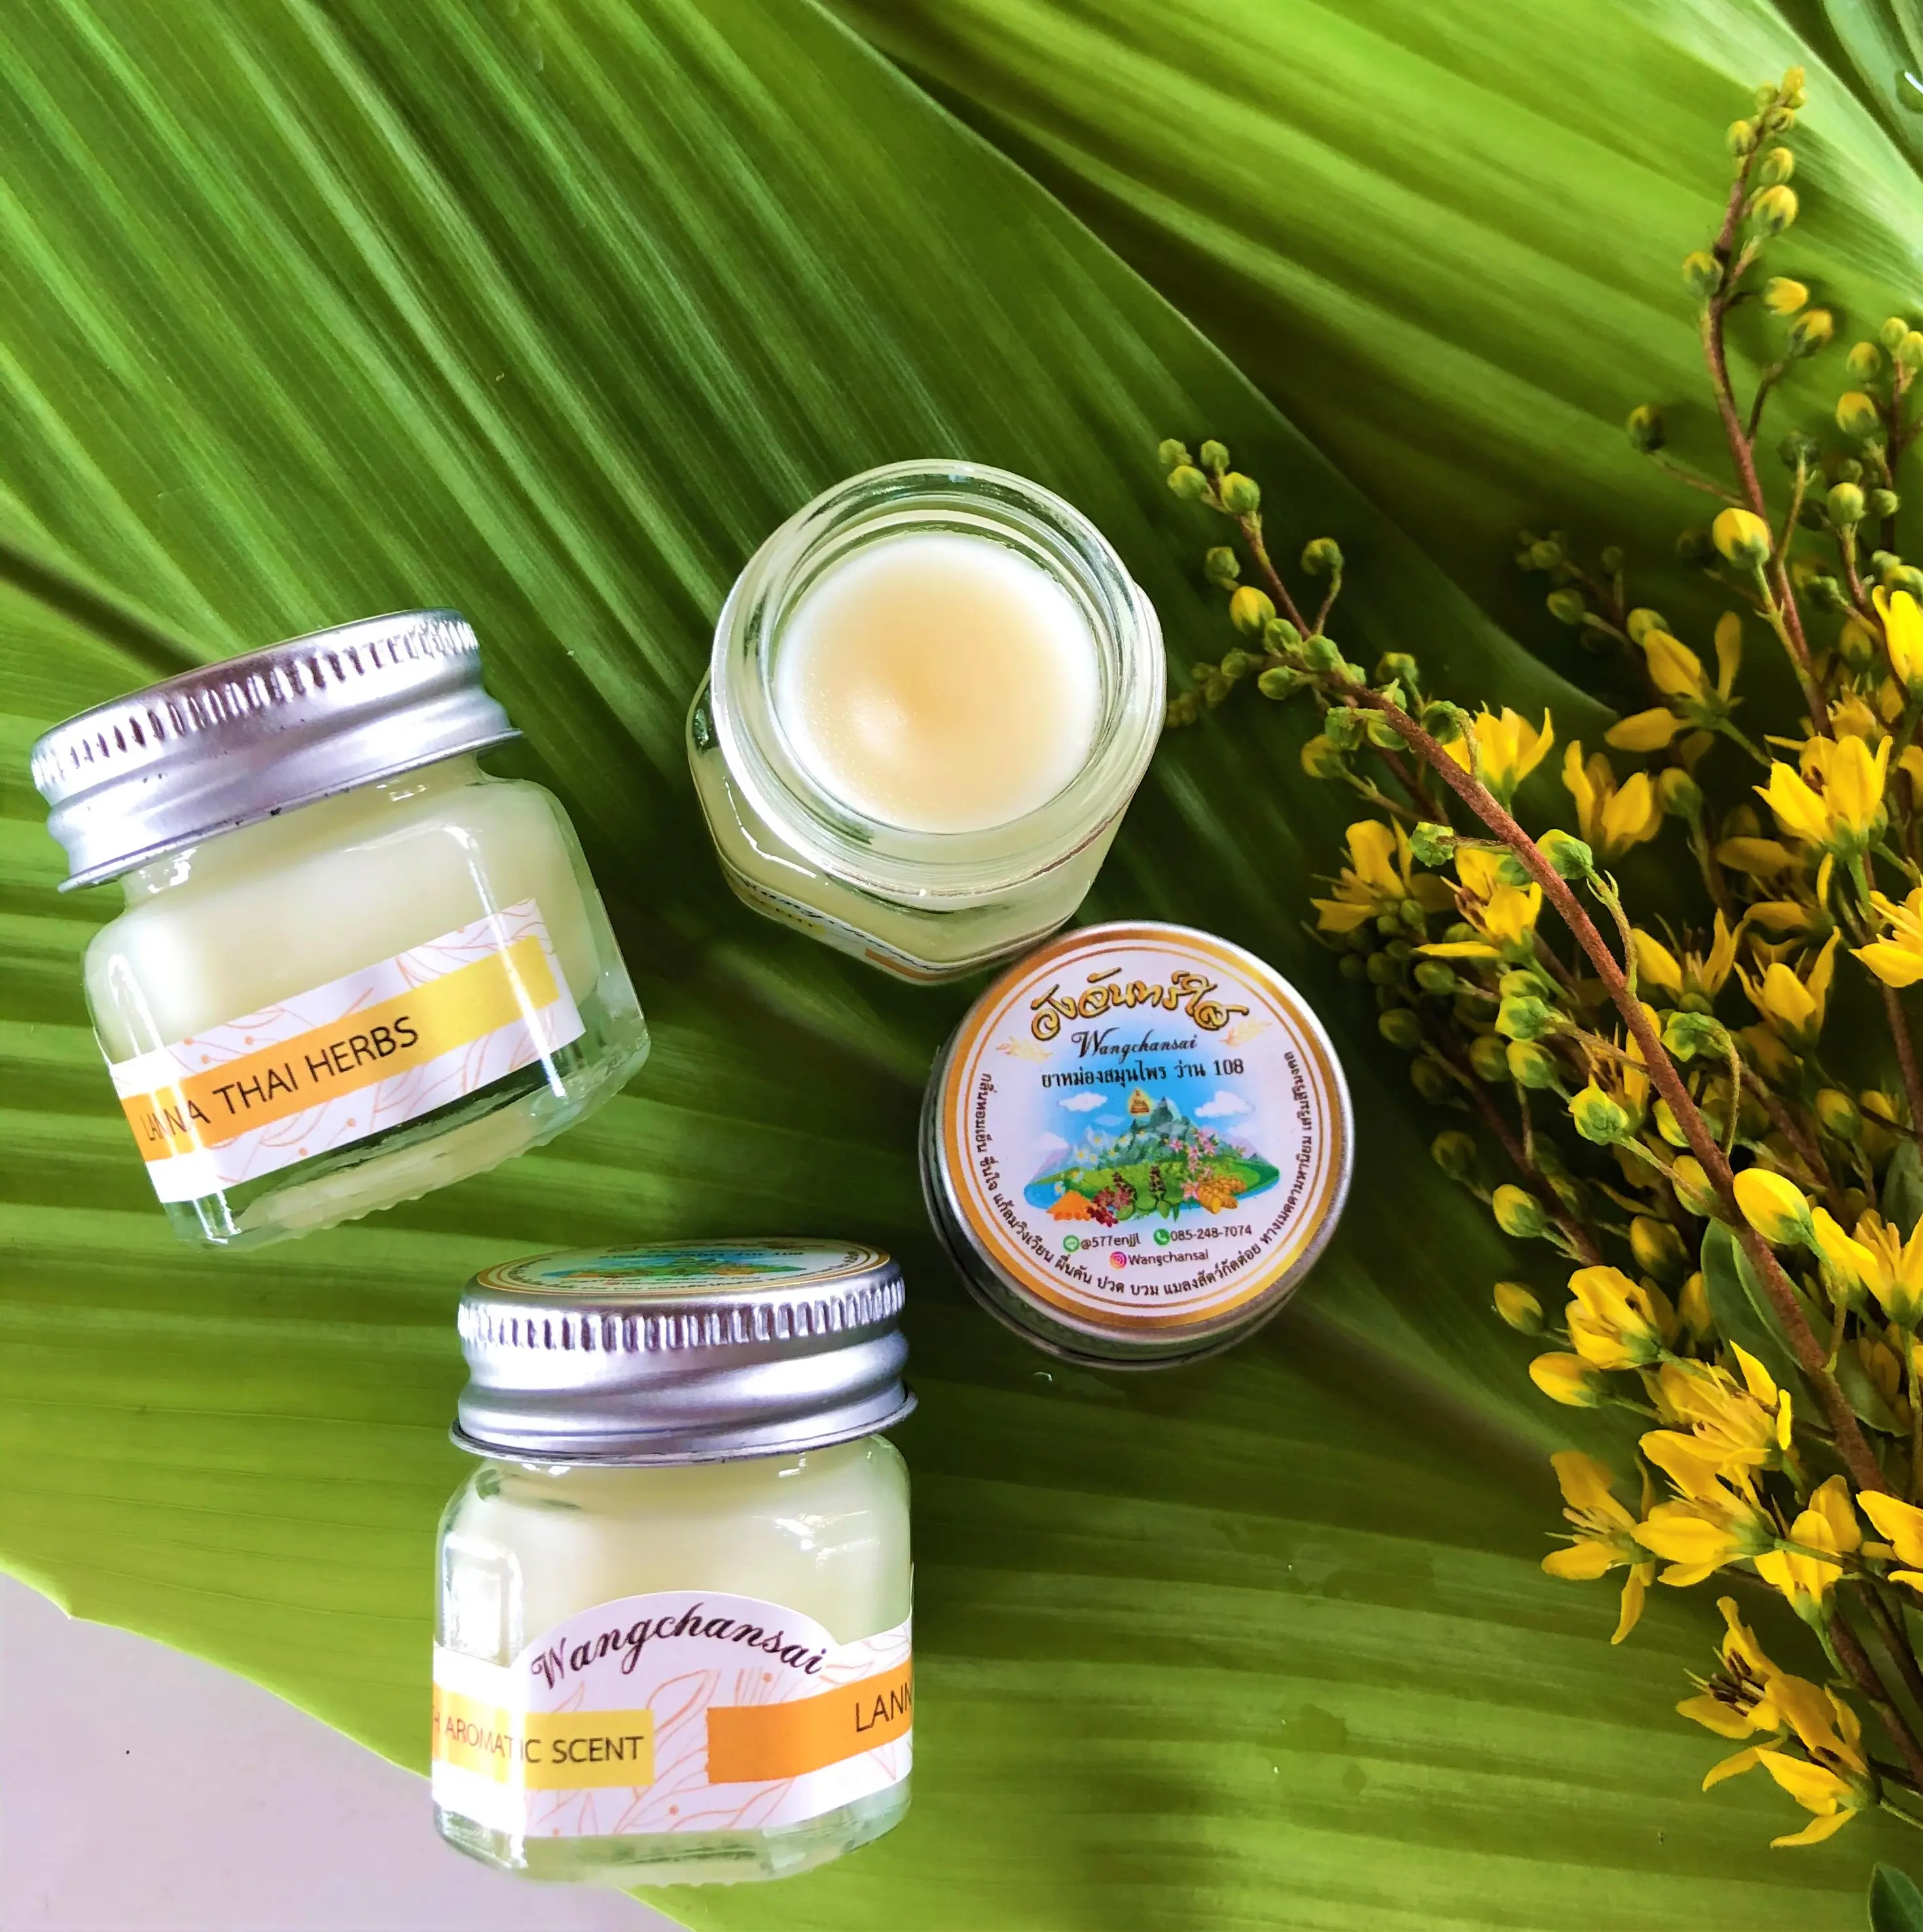 Baume blanc de massage thaïlandais unique à base de plantes, produit de haute qualité pour soulager la douleur avec parfum aromatique, provenant du nord de la Thaïlande